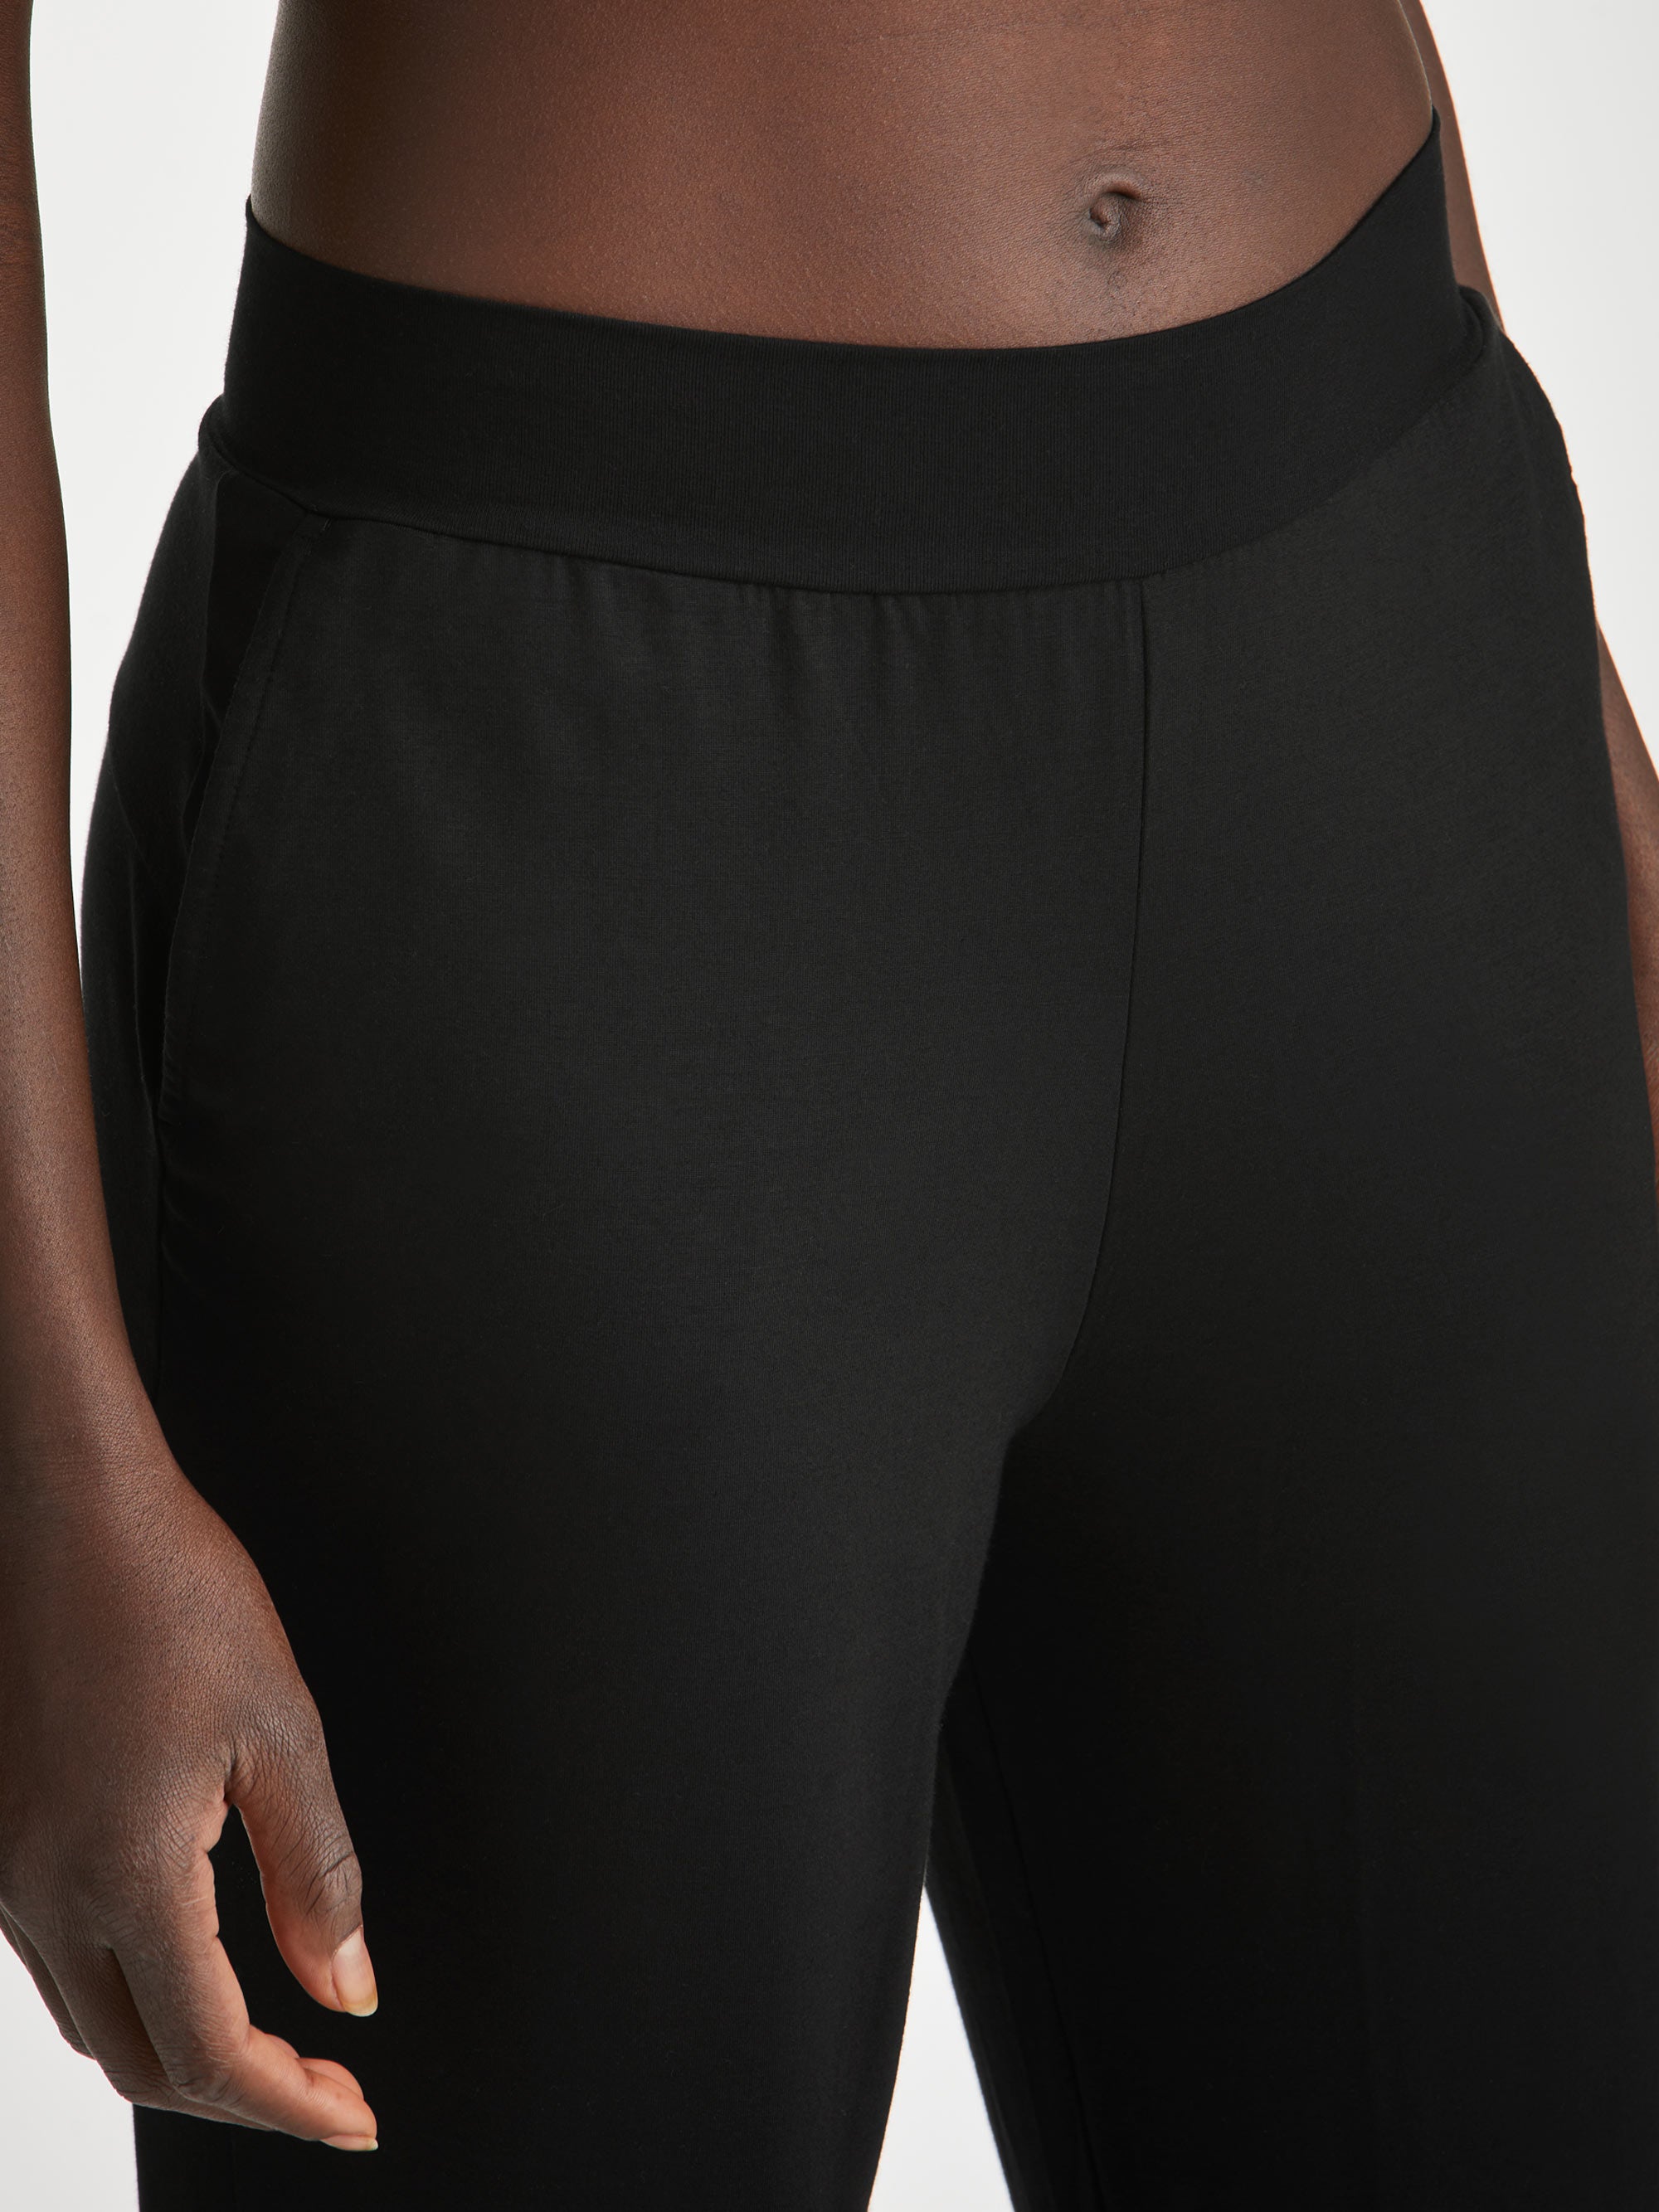 Women's Track Pants Basel Micro Modal Stretch Black